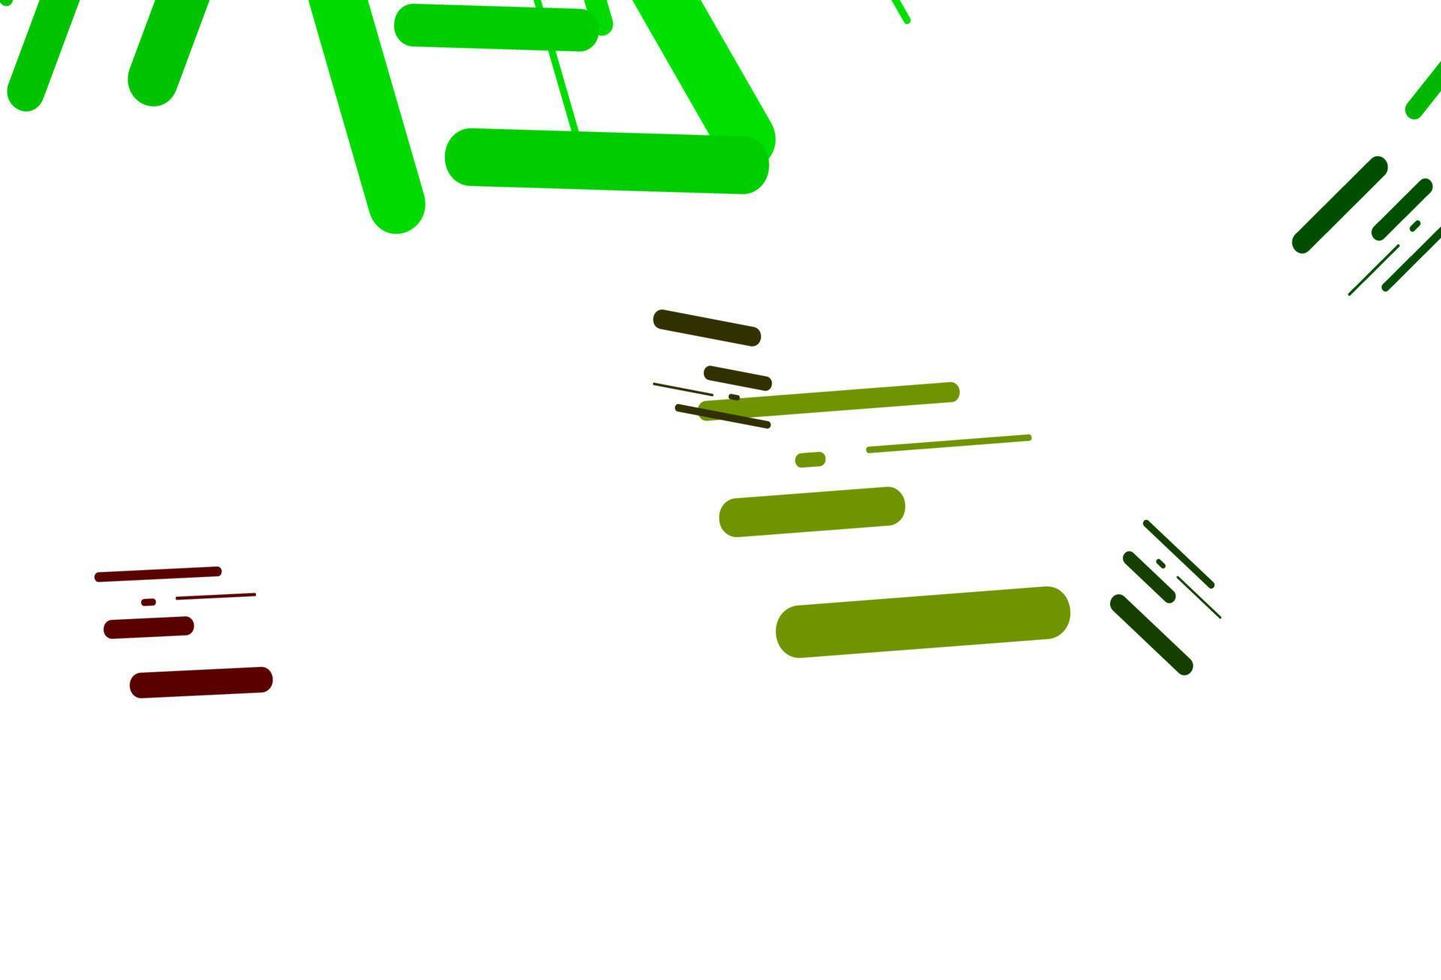 layout de vetor verde e vermelho claro com linhas planas.